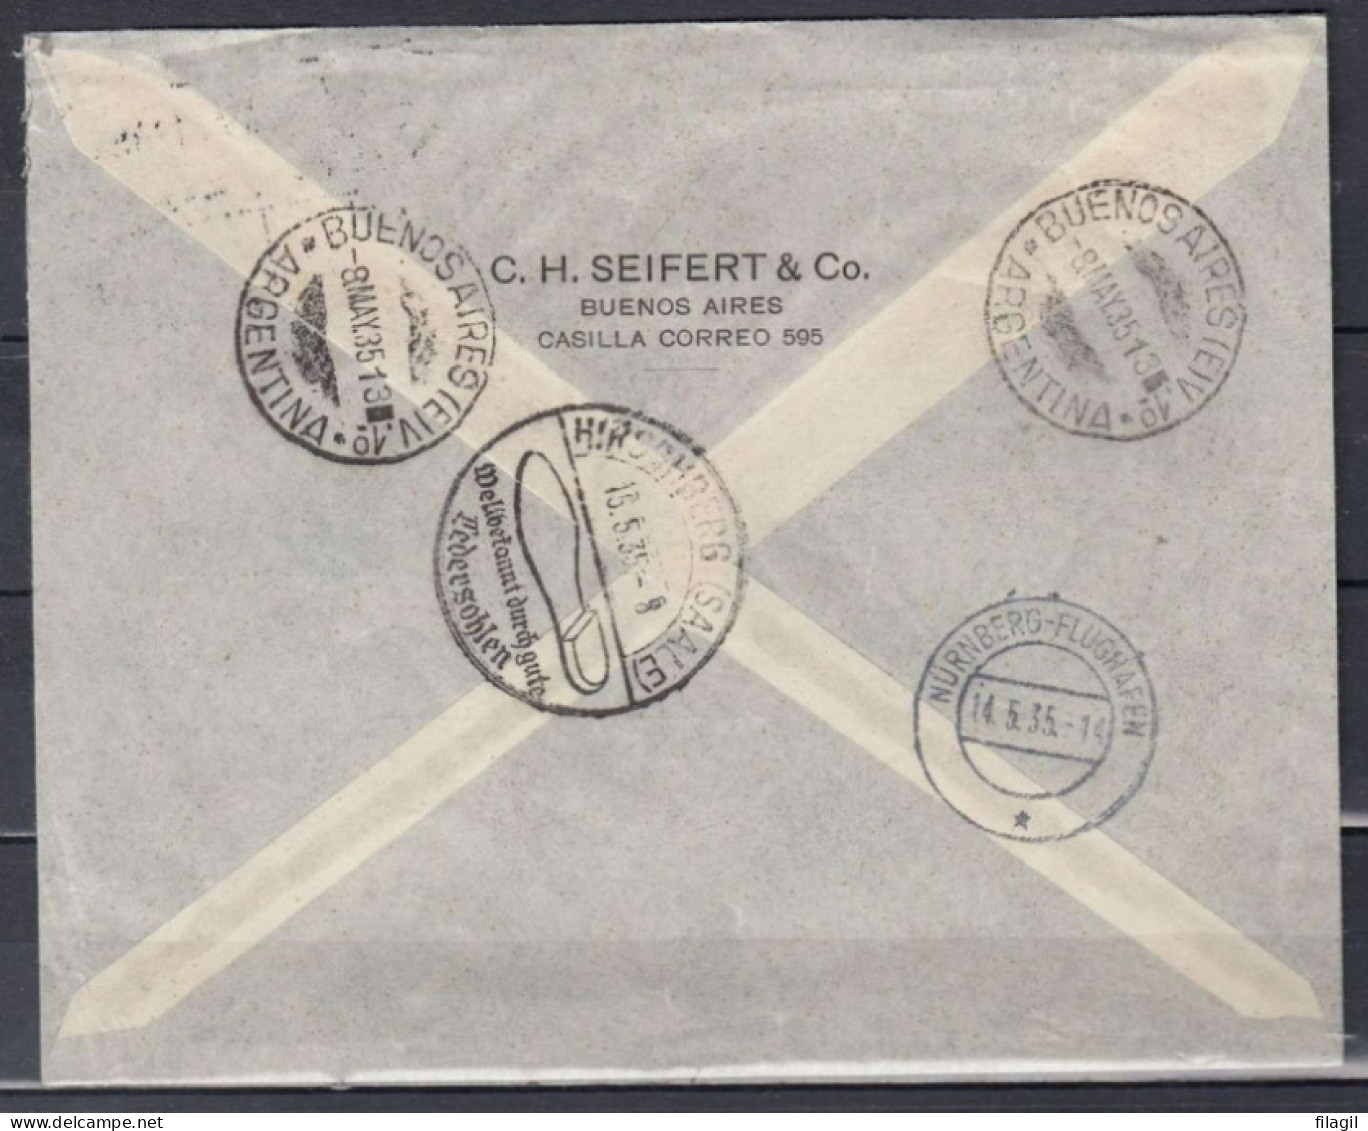 Recommandée Brief Van Buenos Aires Argentina Naar Hirschberg (Saale) Duitsland Certificado Via Aerea Condor-Zeppelin - Luchtpost